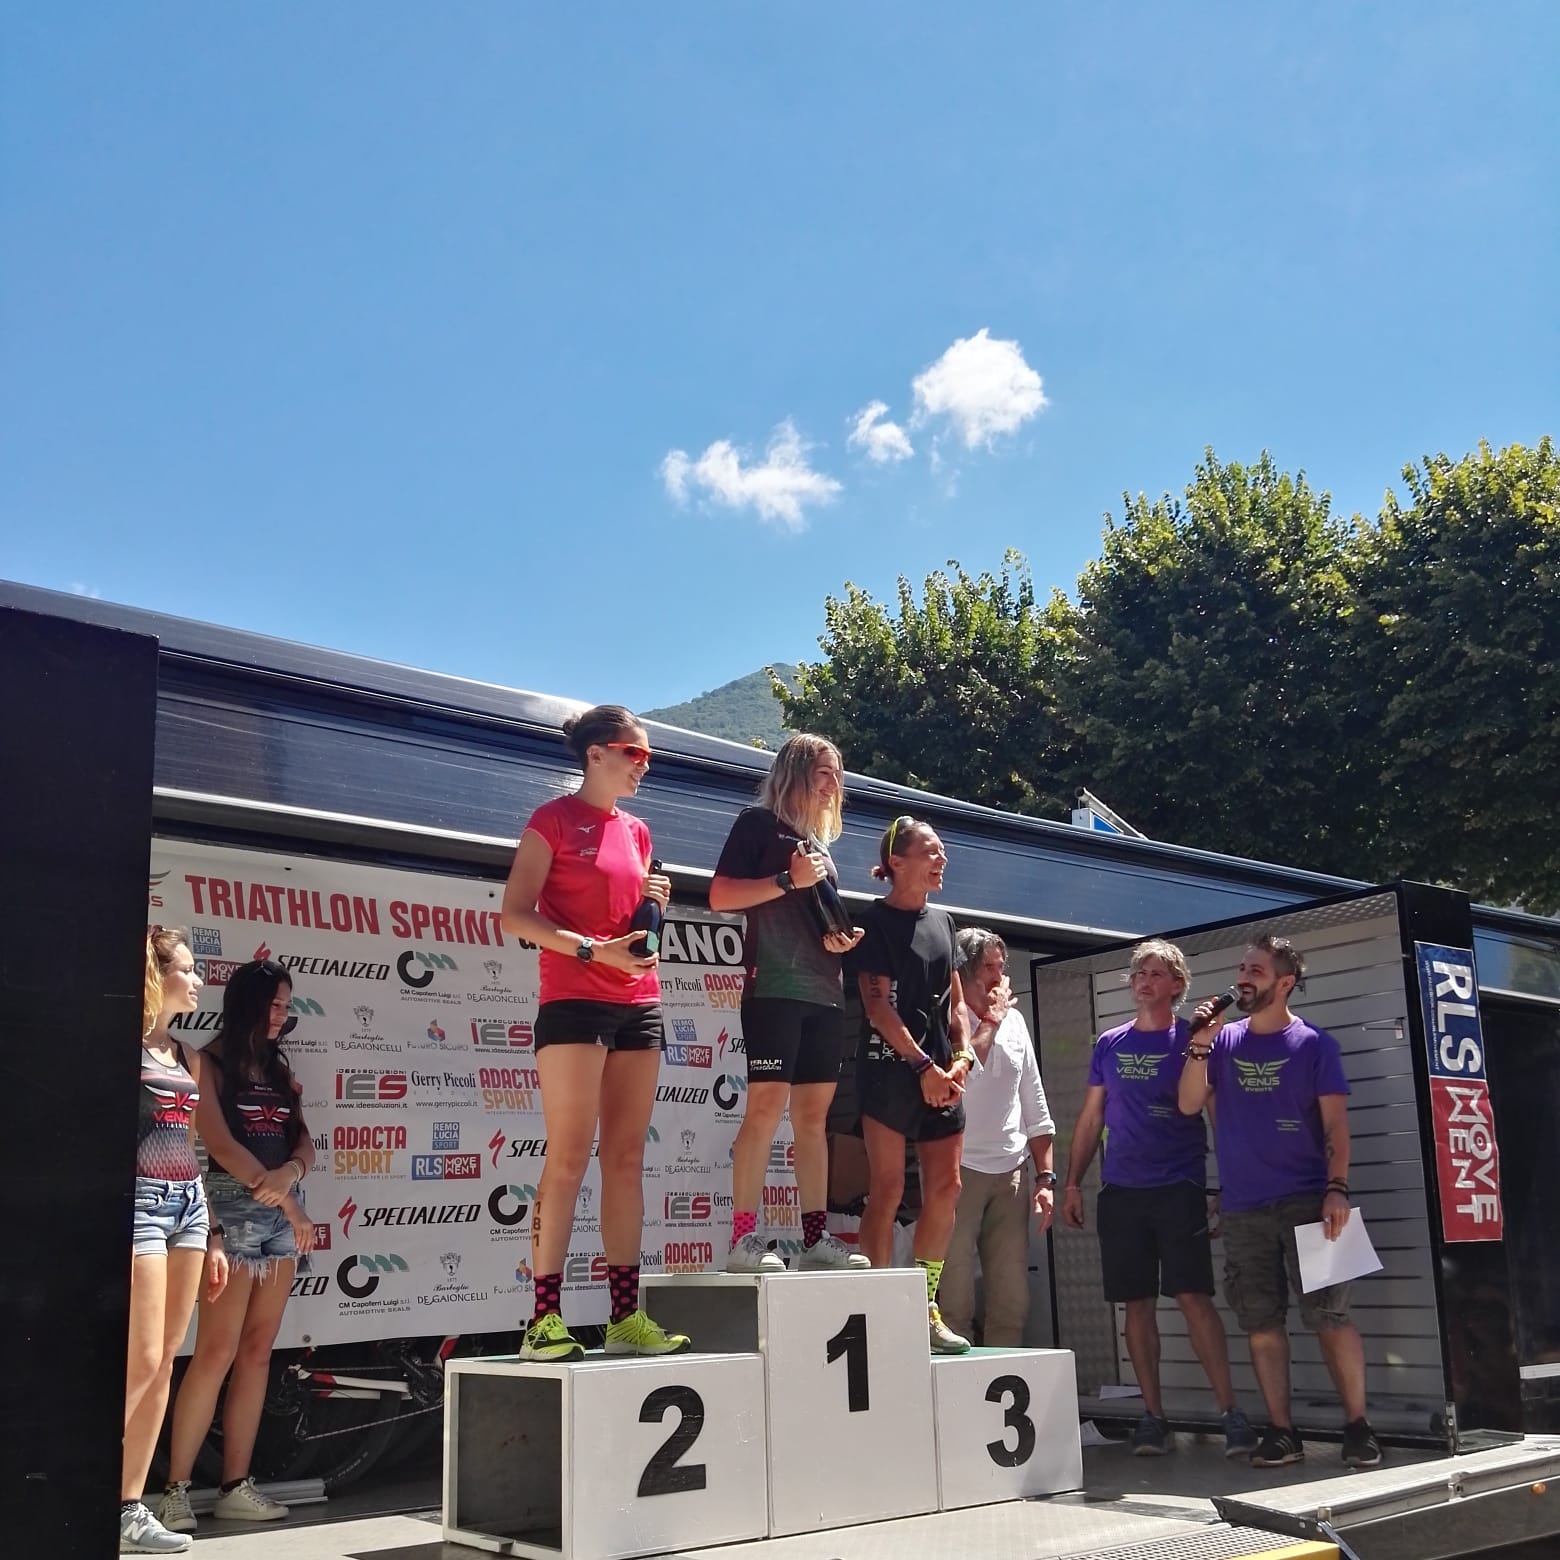 1° Triathlon Sprint di Sulzano, il resoconto